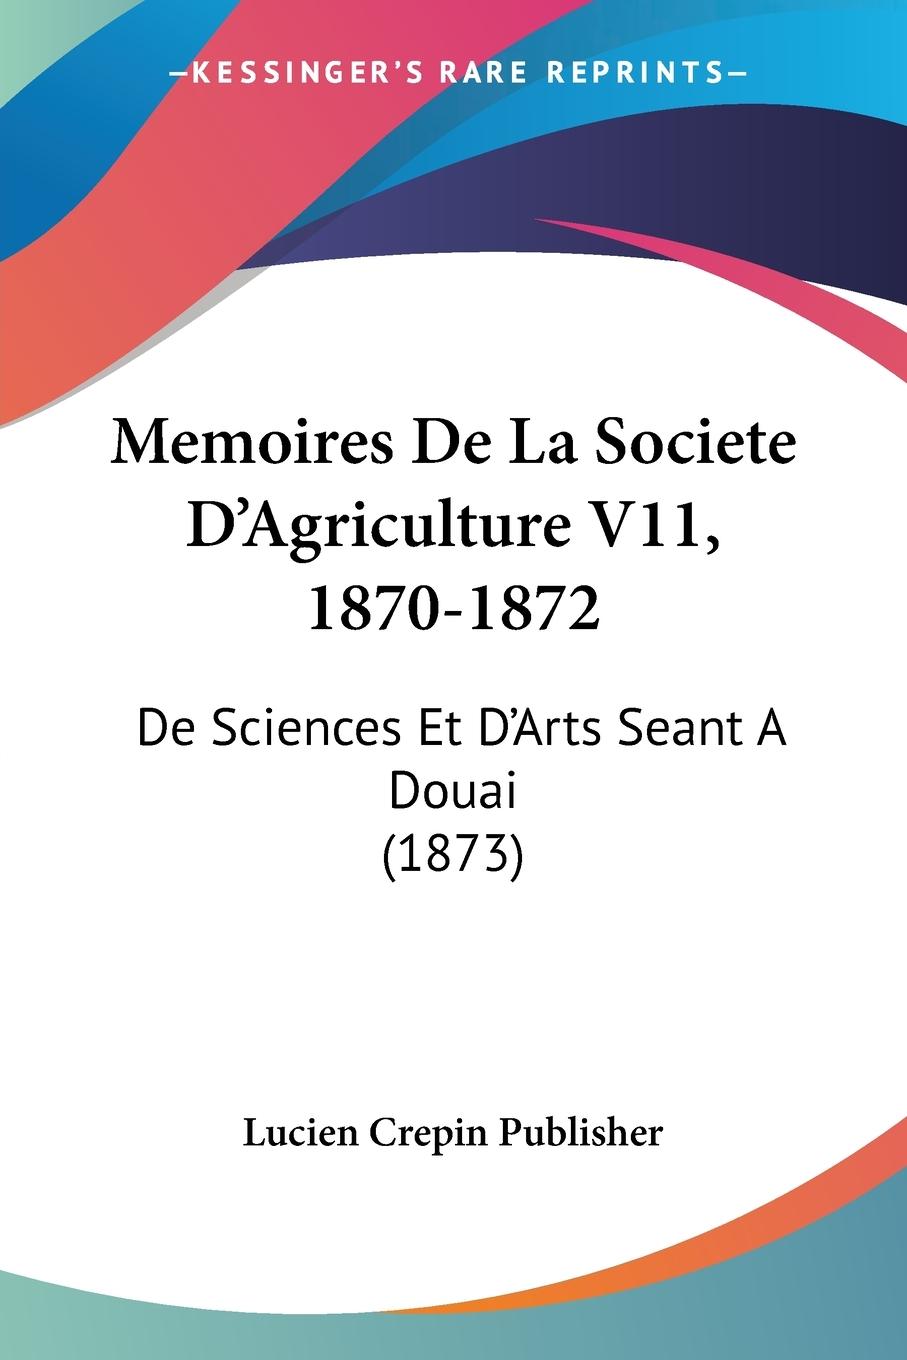 Memoires De La Societe D Agriculture V11, 1870-1872 - Lucien Crepin Publisher